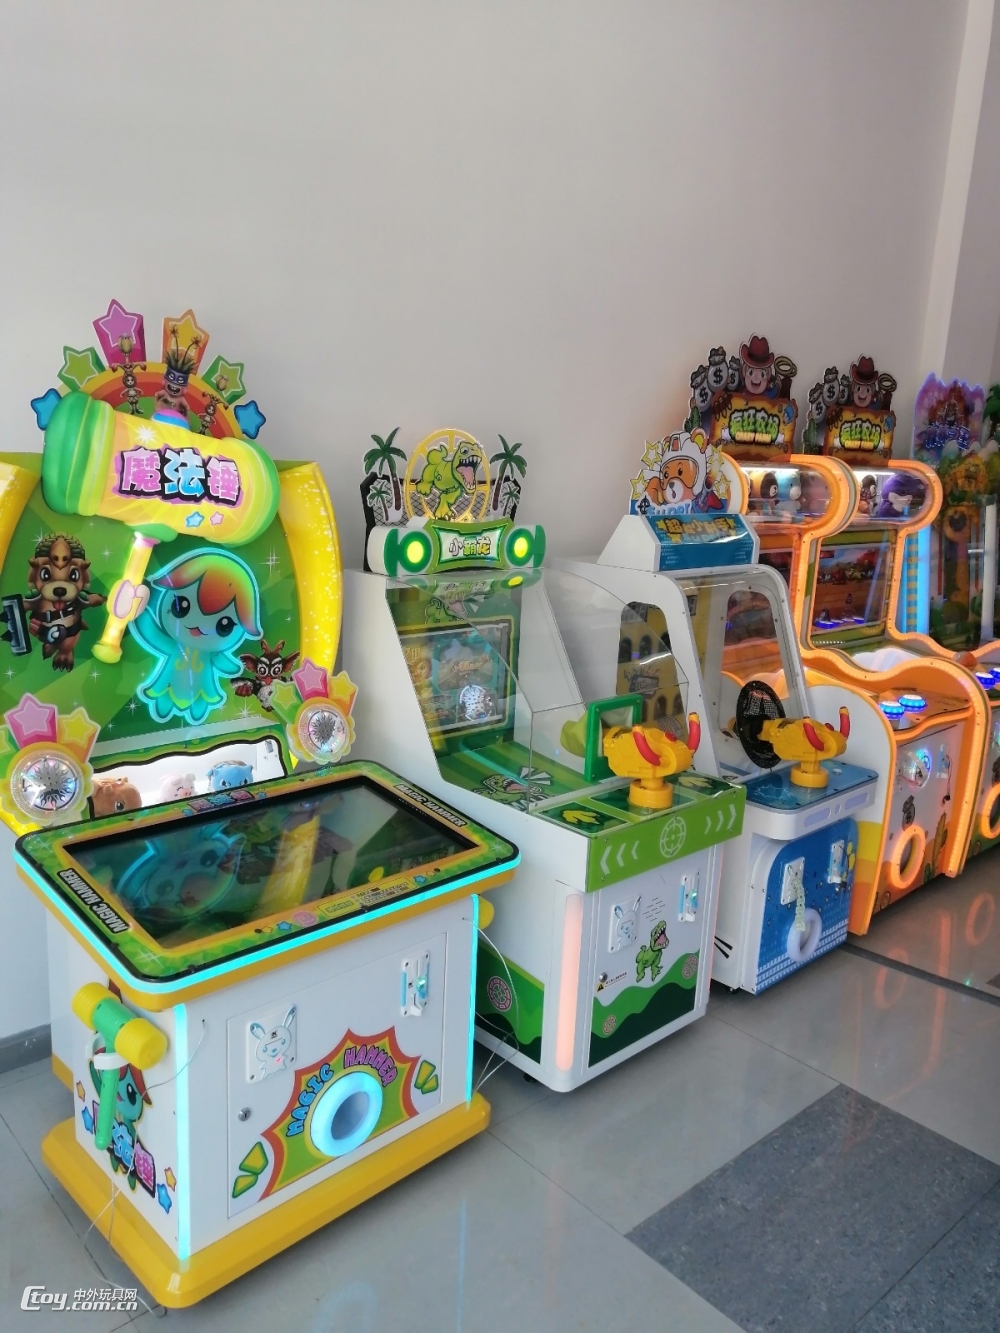 魔法锤打地鼠游戏机 儿童游乐机器 电玩设备游戏机厂家 儿童机